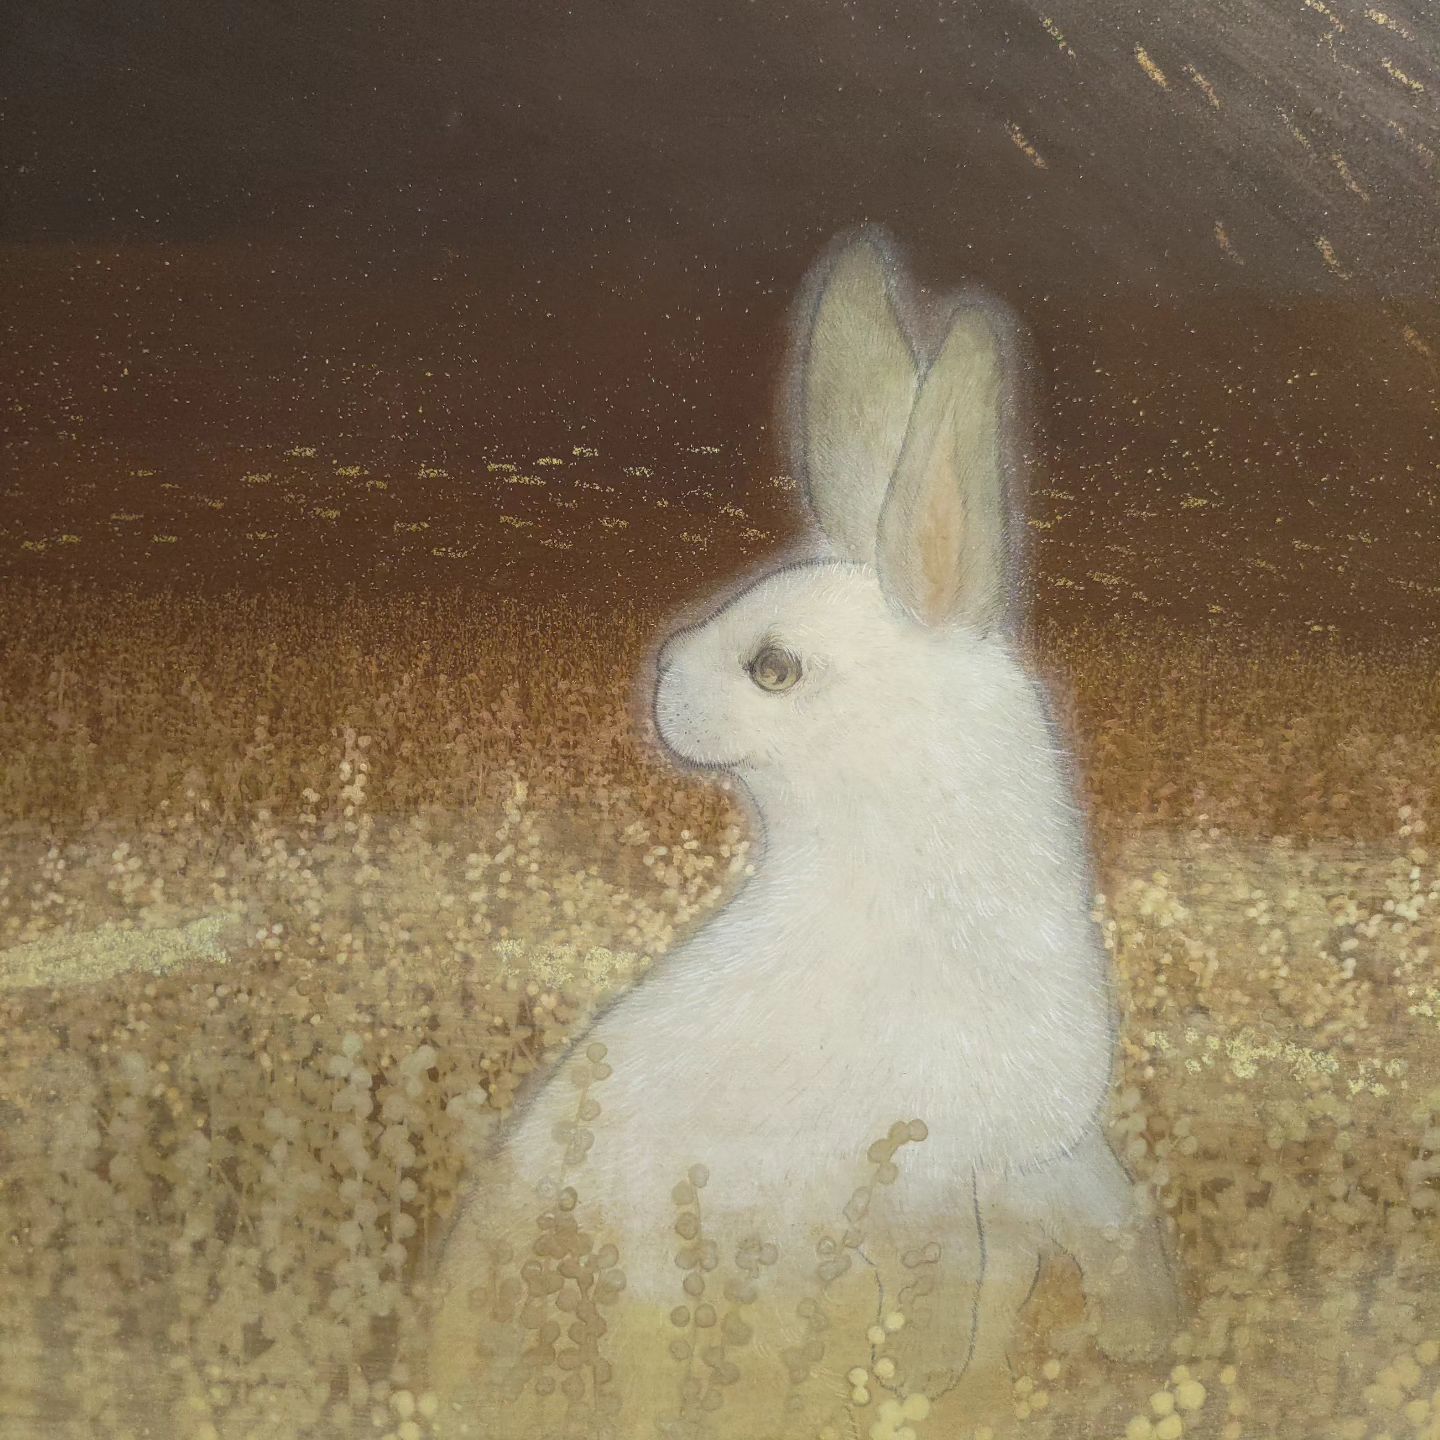 『いつか静かの海で』

2011年に描いた作品です。
月のウサギが、地球にいる生き別れた仲間を思う様子を描きました。久しぶりにこの作品を箱から出してみたら、劣化なく綺麗な状態だったので、展示してみました。

会期：11月11日(土)～20日(月)
時間：10:00～18:00
場所：広島市中区立町1-24
  広島信用金庫八丁堀支店10階
  ひろしんギャラリー